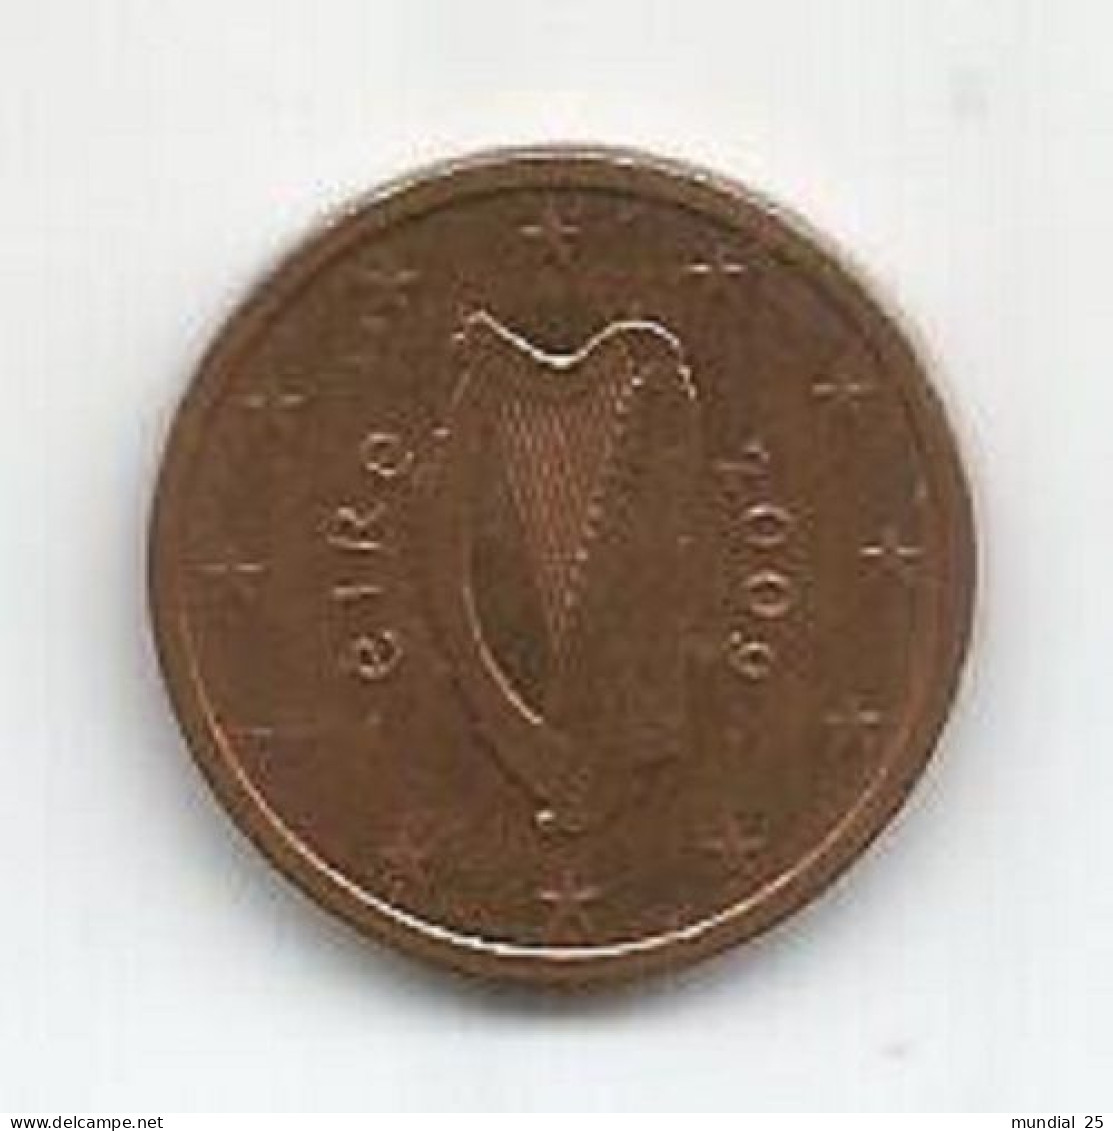 IRELAND 2 EURO CENT 2009 - Irlanda